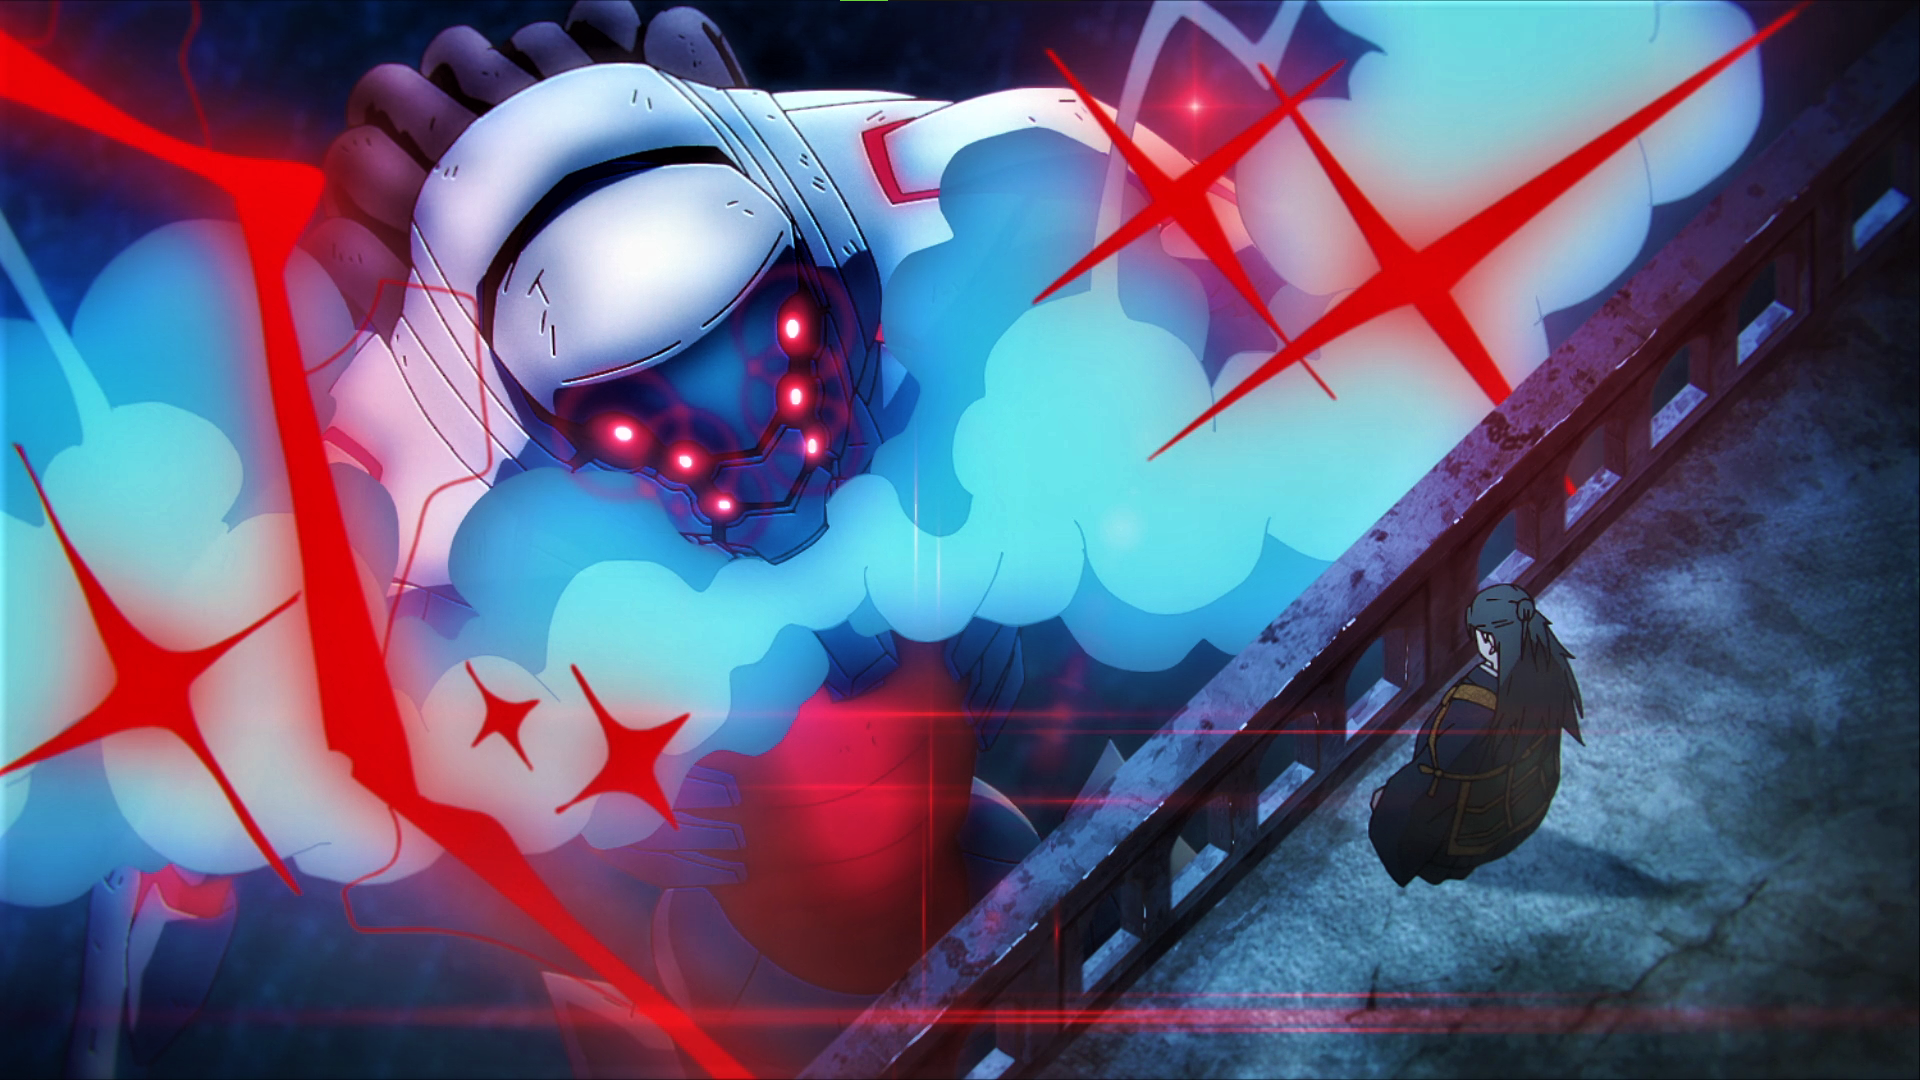 Jujutsu Kaisen Mech Suits Suguru Geto Smoke Glowing Eyes Laser Bridge Looking Up Robot Anime Anime S 1920x1080